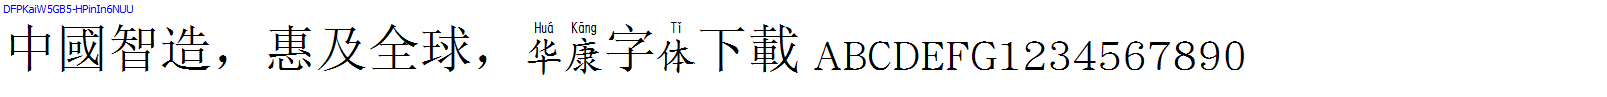 華康字體DFPKaiW5GB5-HPinIn6NUU.TTF